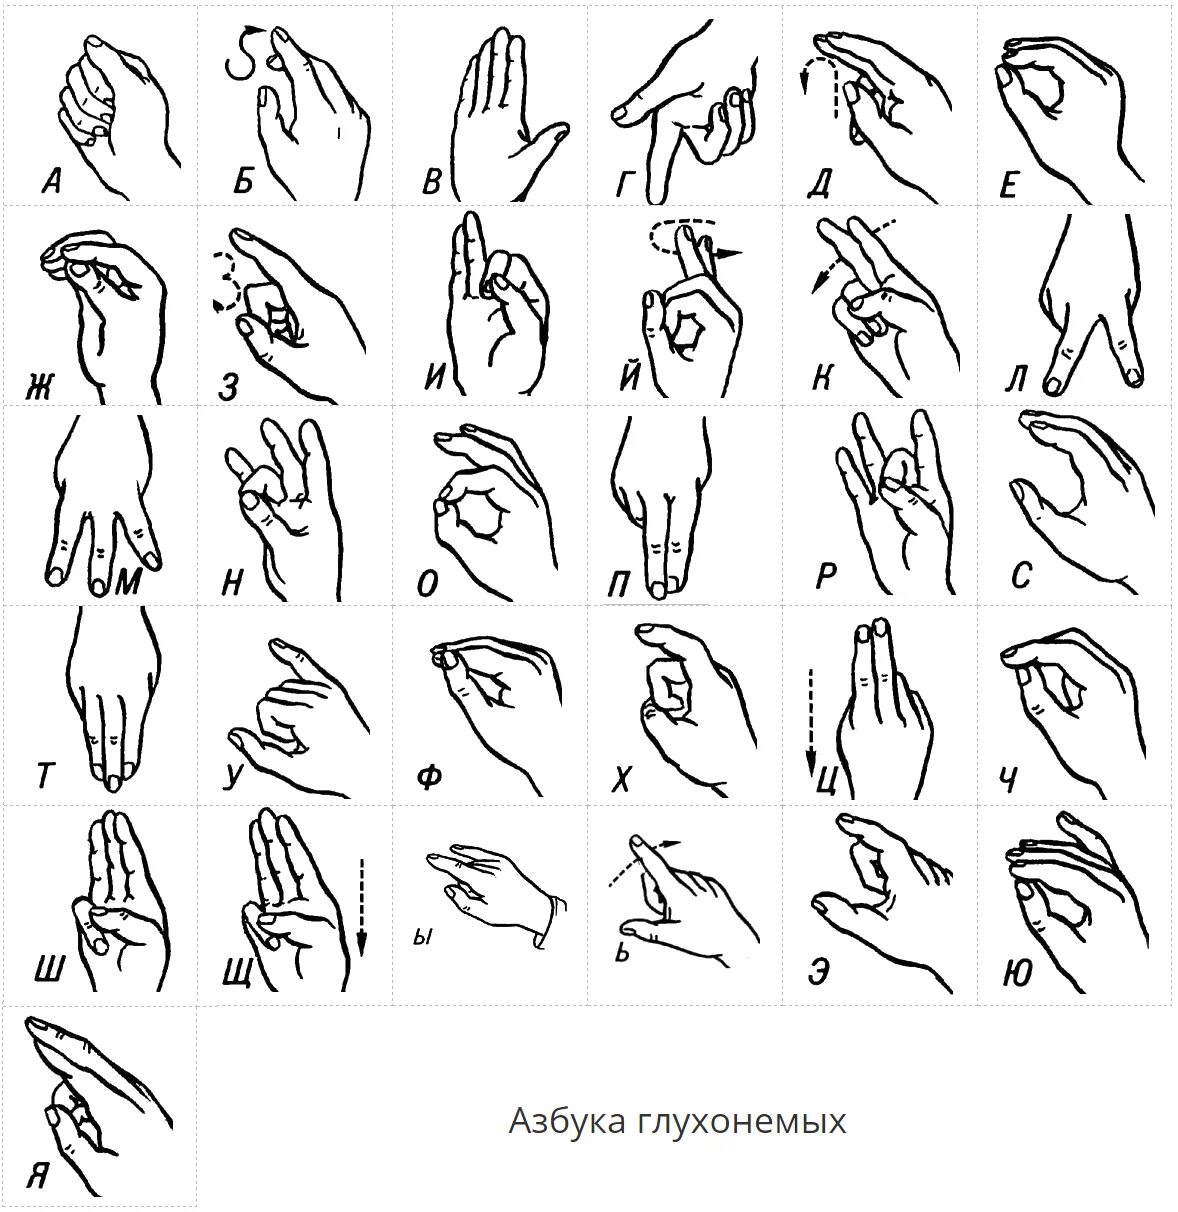 Язык жестов глухонемых алфавит. Алфавит жестов для глухонемых. Дактиль Азбука жестов. Азбука для глухонемых дактильная. Язык глухонемых русский